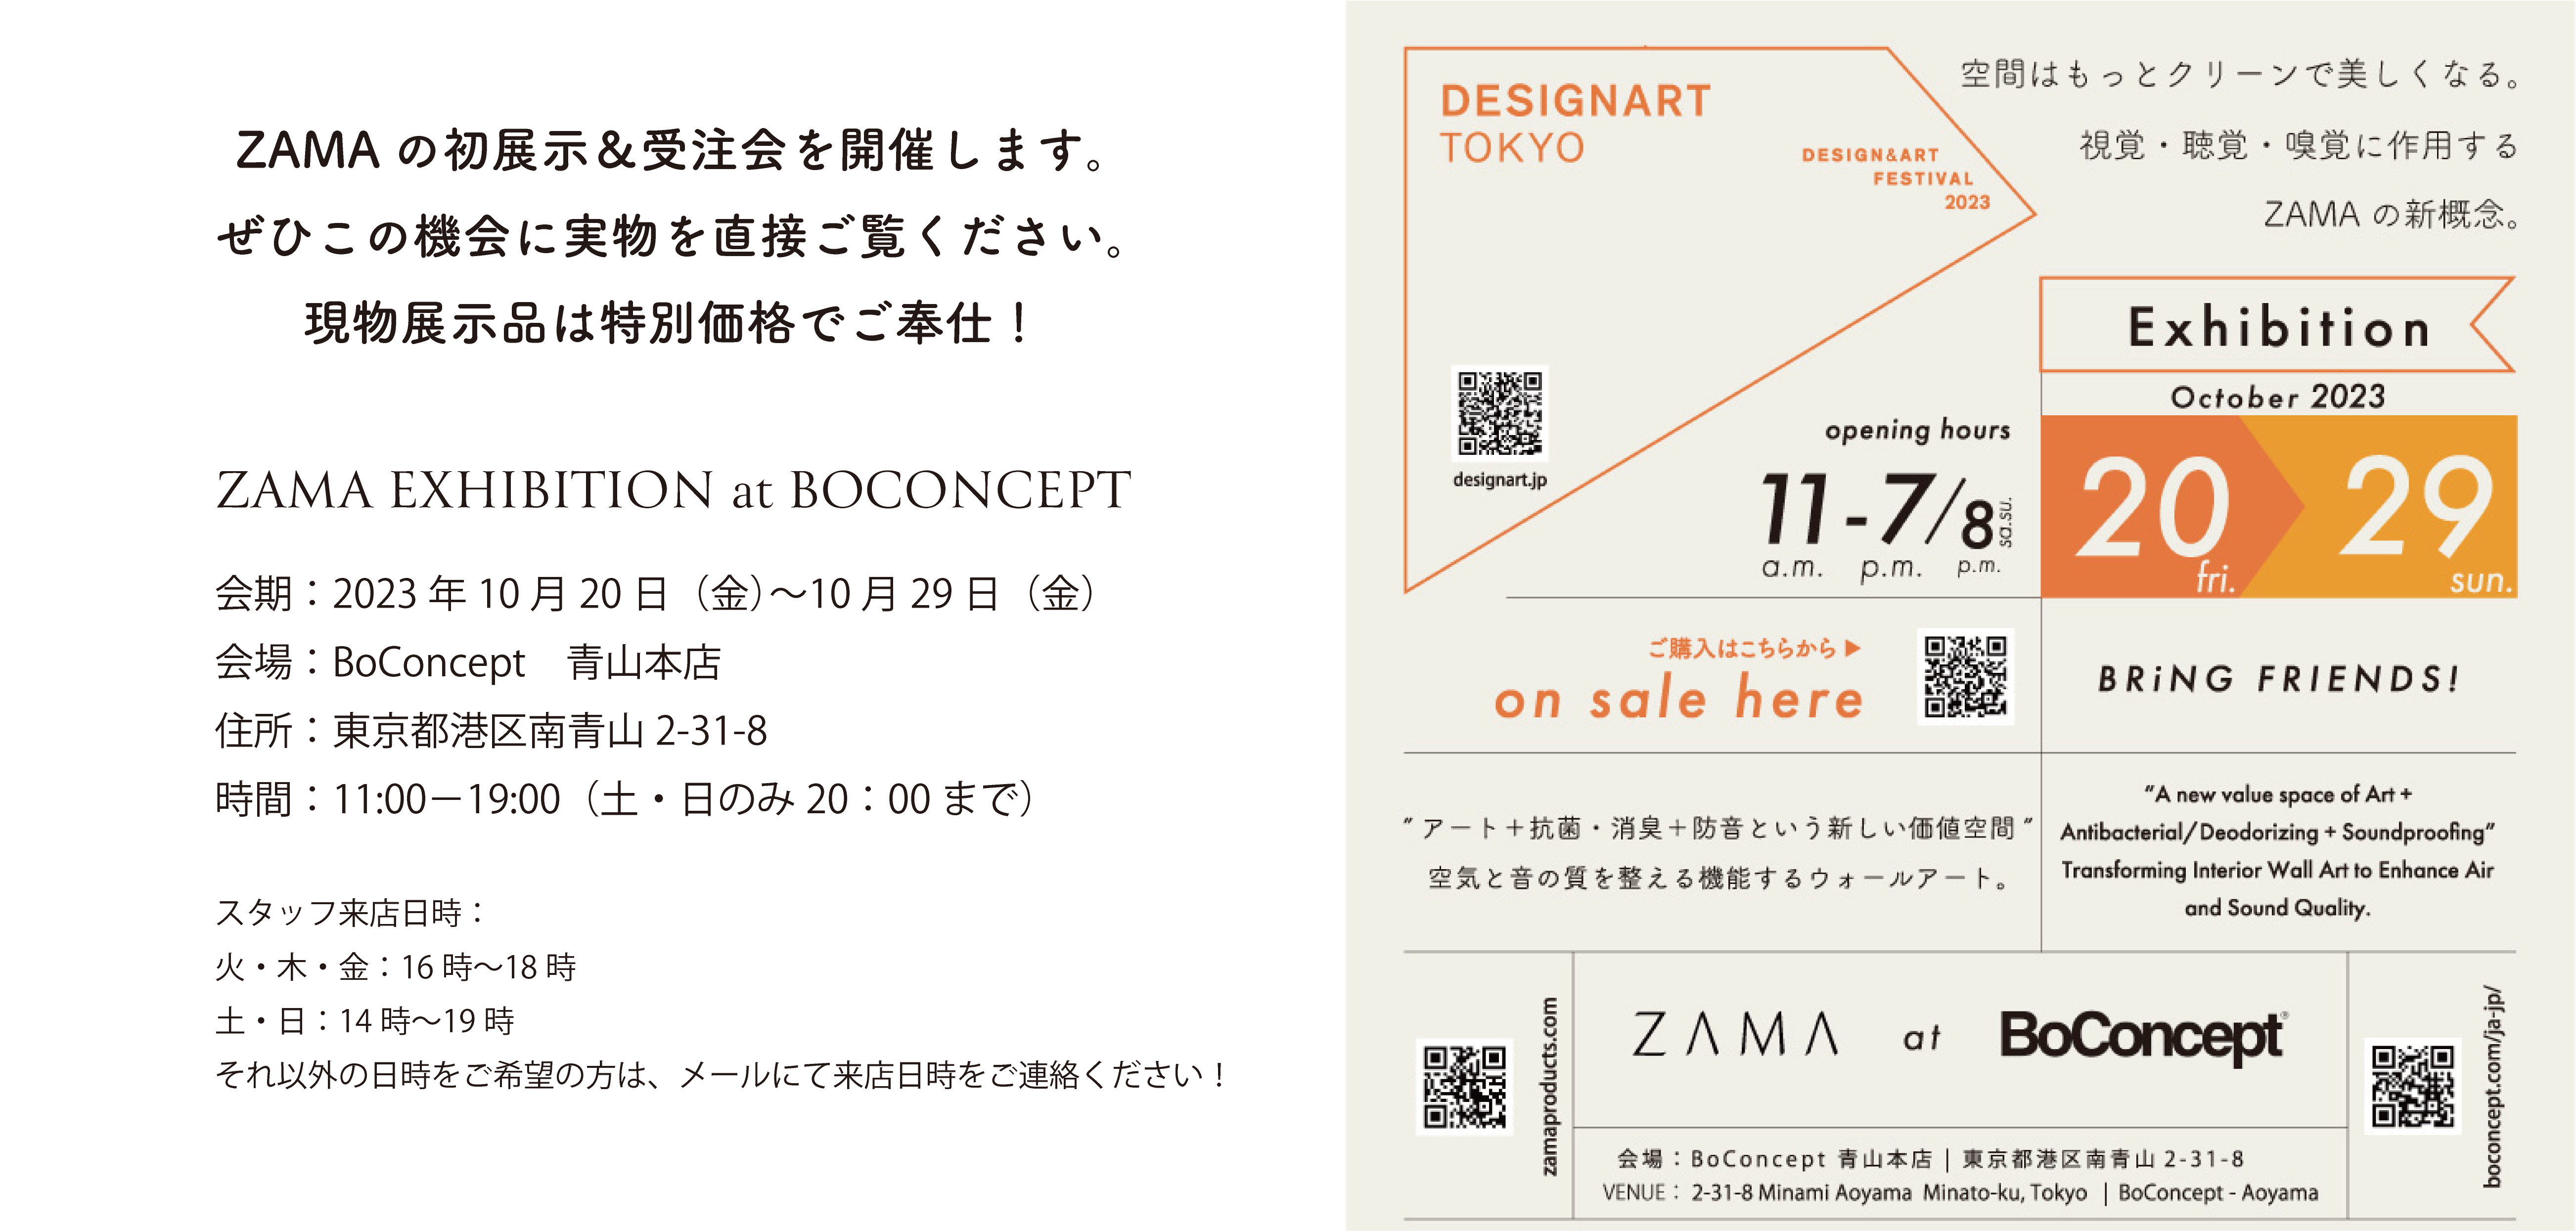 zama-exhibition-at-Boconcept-aoyama-2023.10.20-10.29